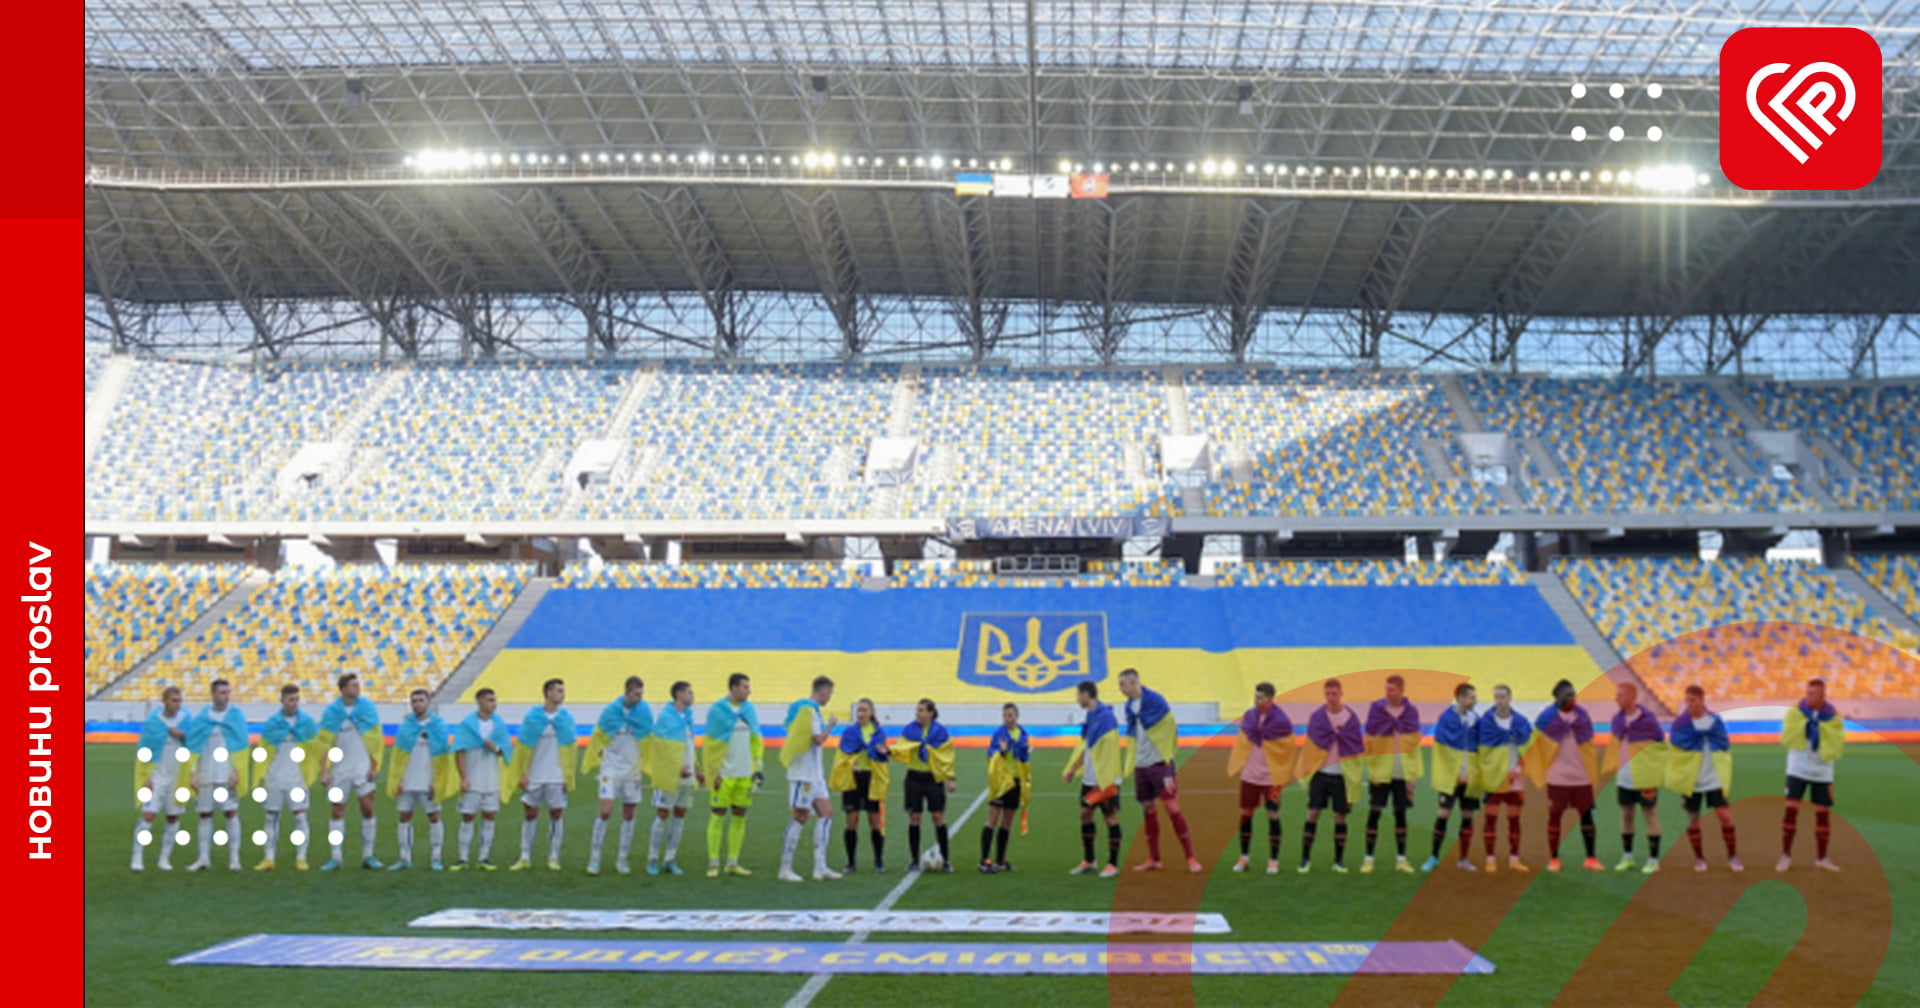 Дніпро-1 переміг, а Динамо та Шахтар зіграли внічию. Результати українських клубів у єврокубках